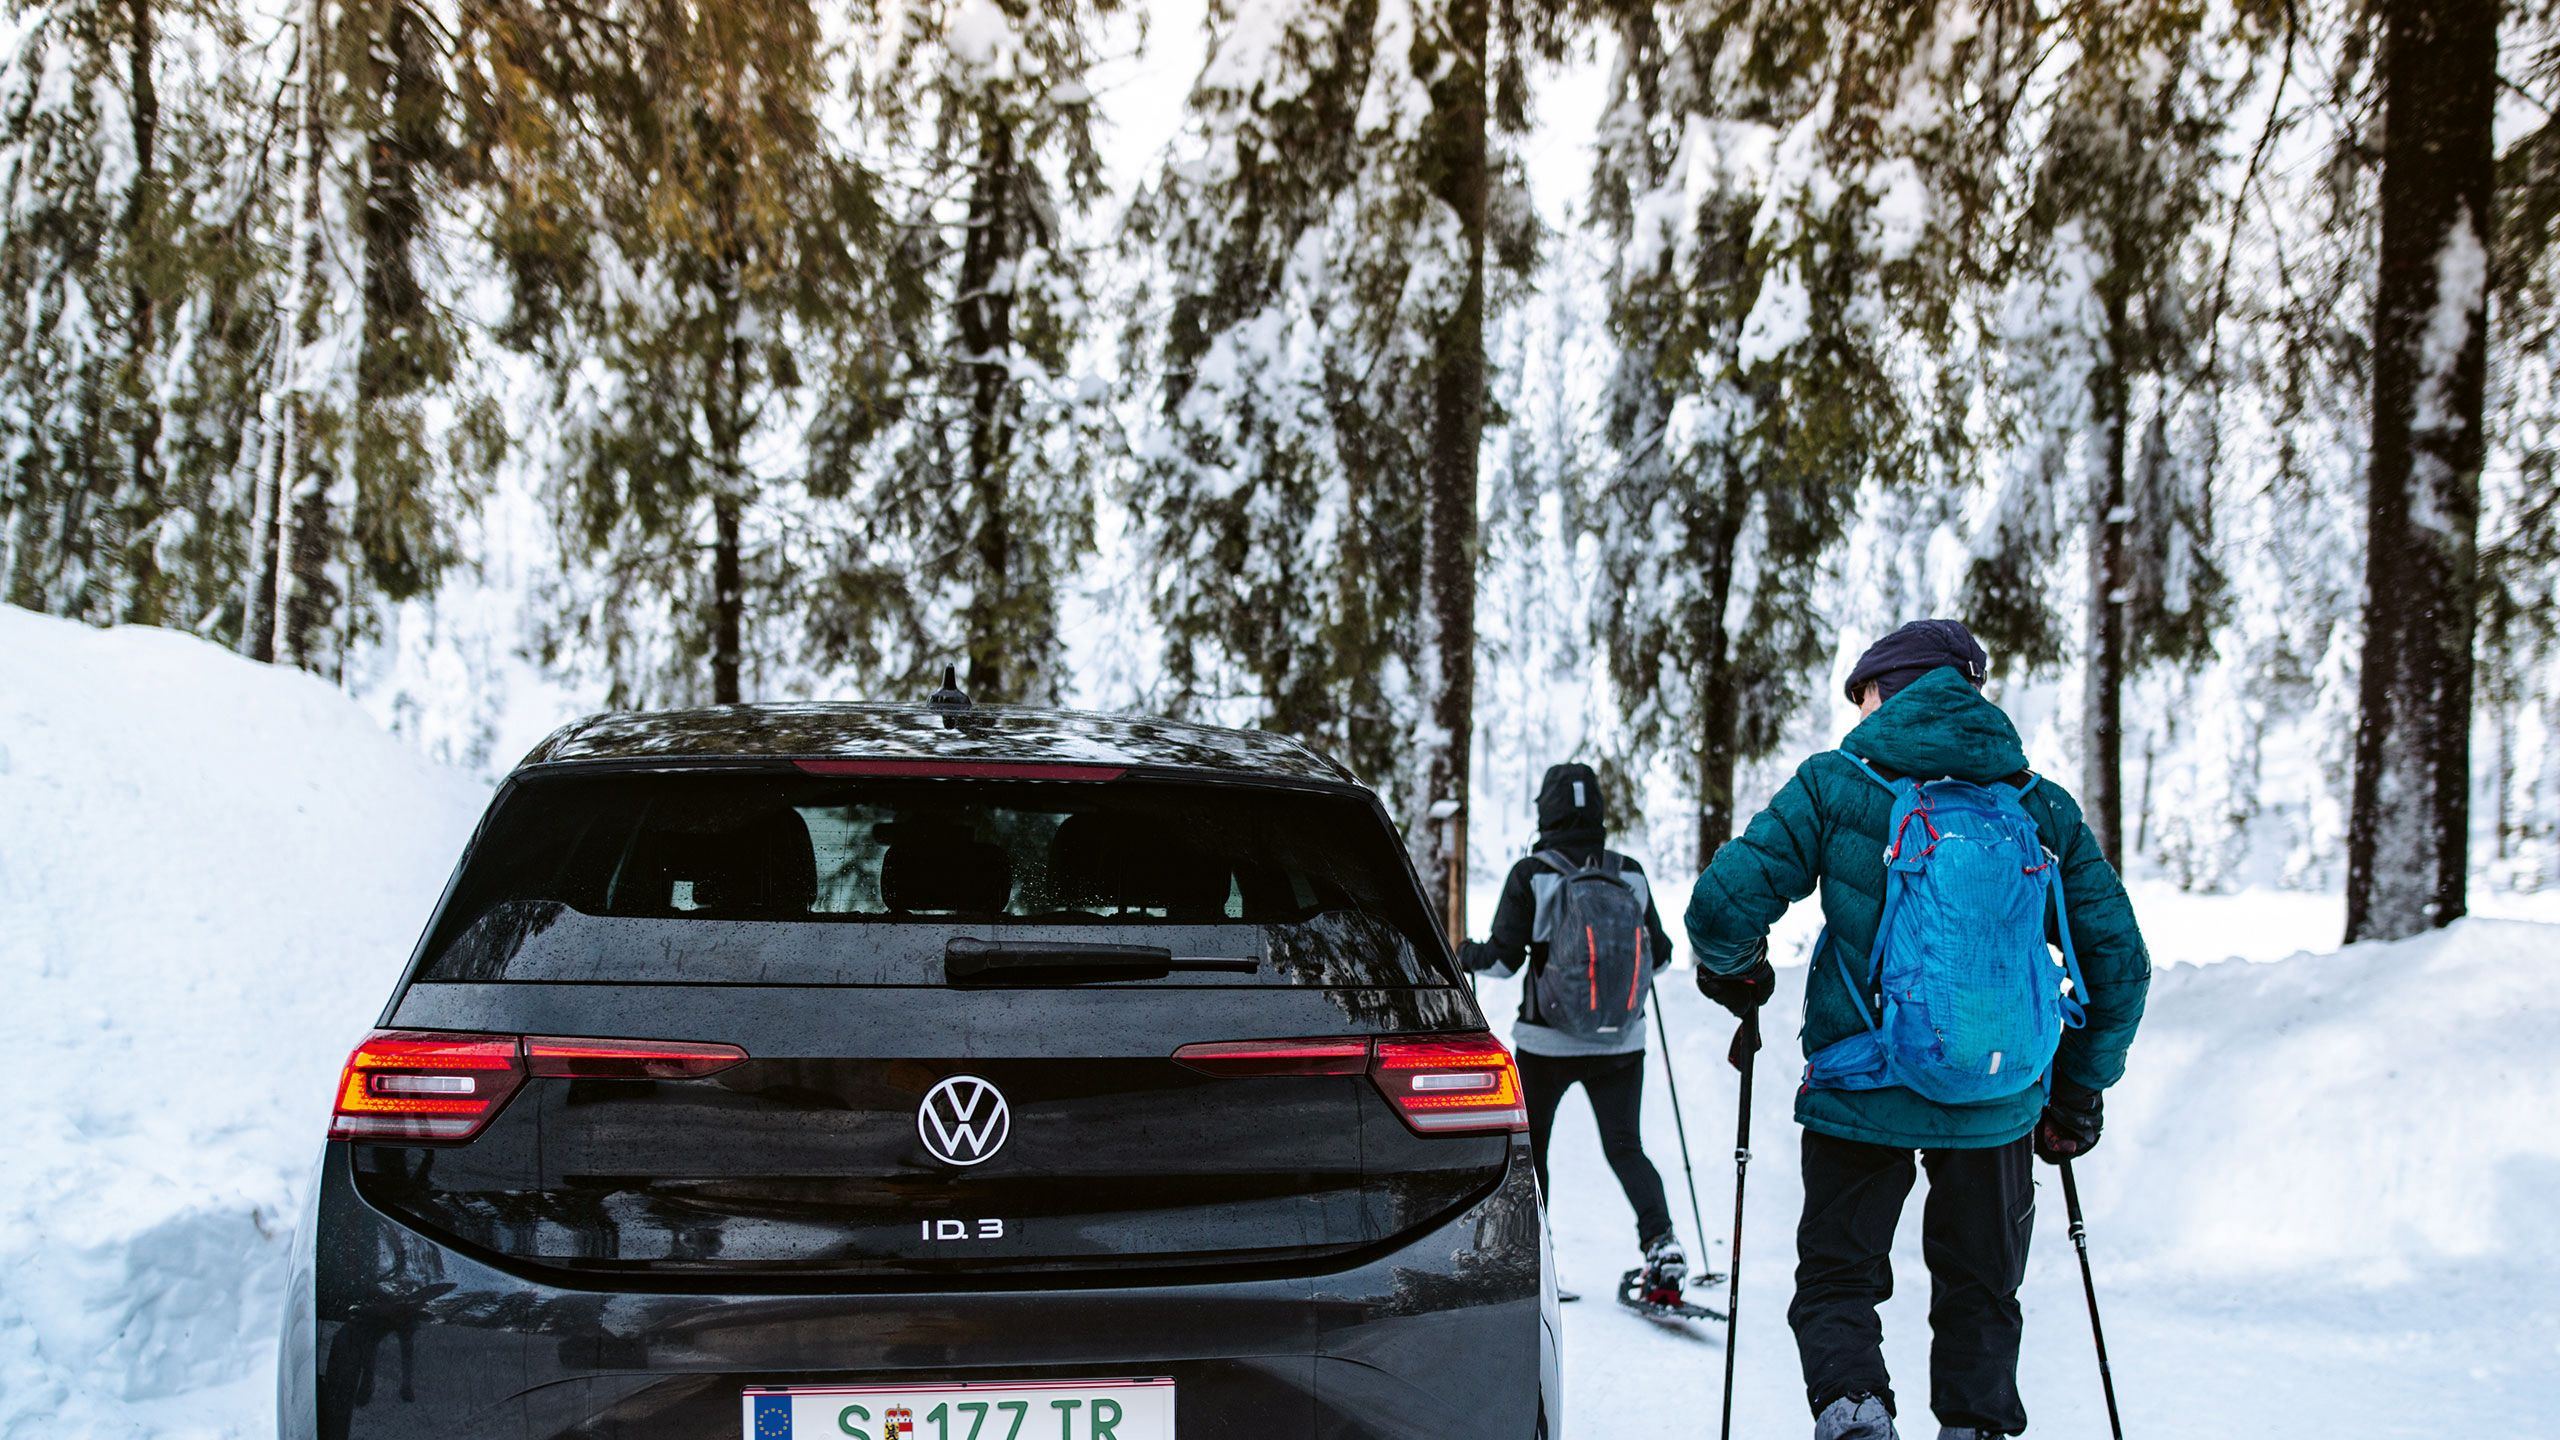 Ein schwarzer VW ID.3 steht in einer Schneelandschaft während zwei Menschen Skifahren